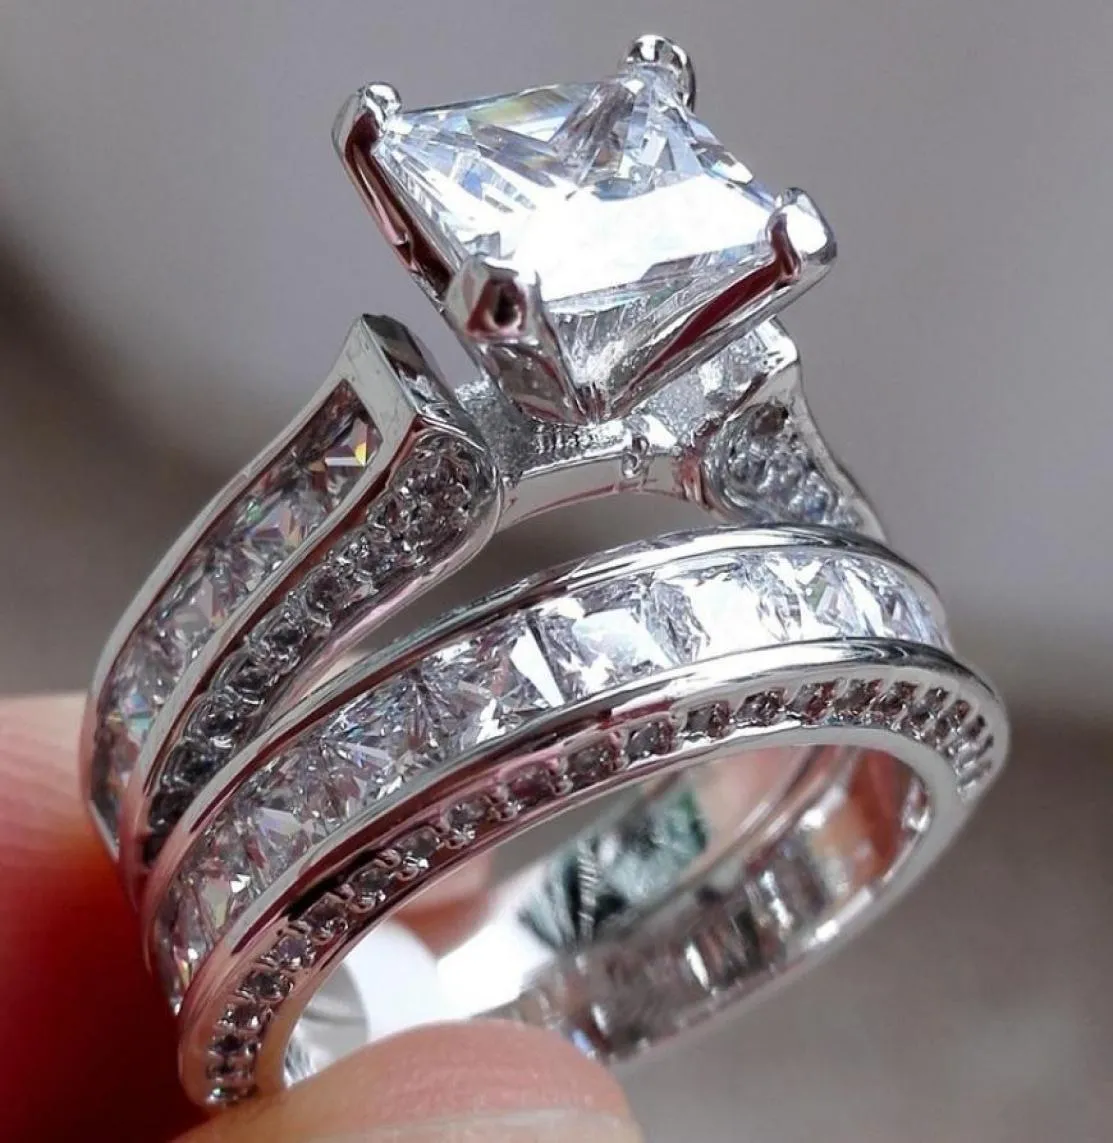 الحجم الفاخر 5678910 المجوهرات 10kt الذهب الأبيض المملوءة توباز توباز برينسيس قطع خاتم الزواج الماسي محاكاة مجموعة هدية AB18467420756